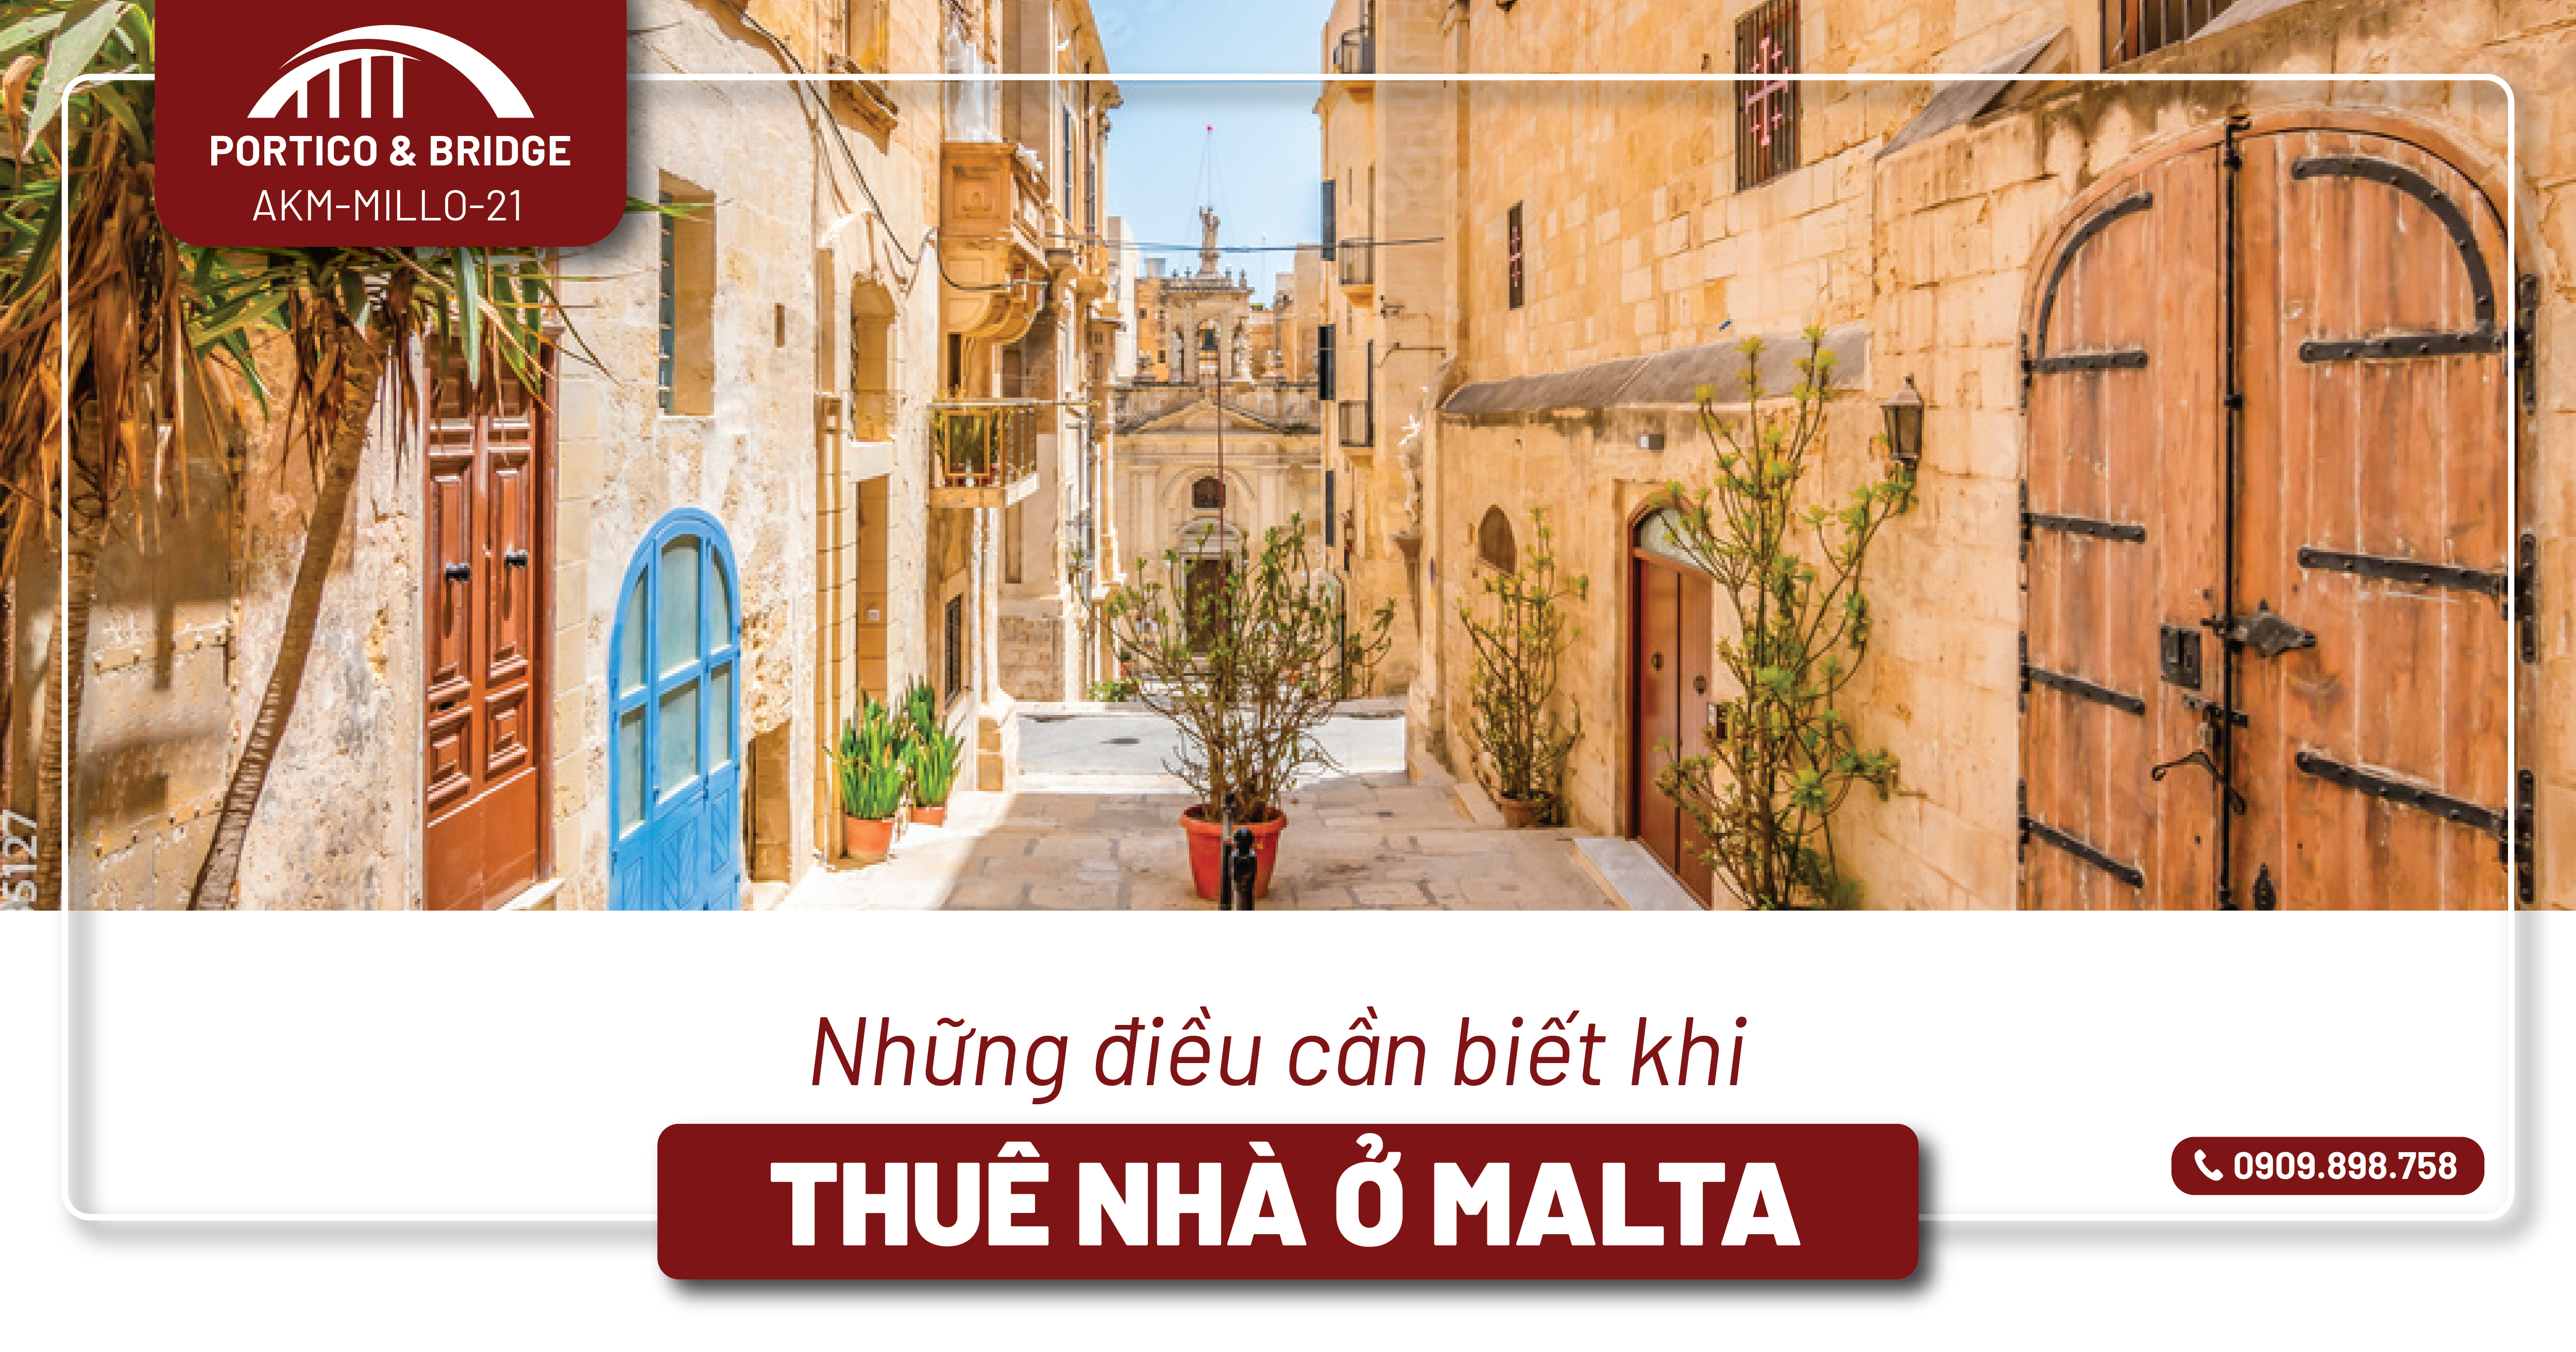 Thuê nhà ở Malta 